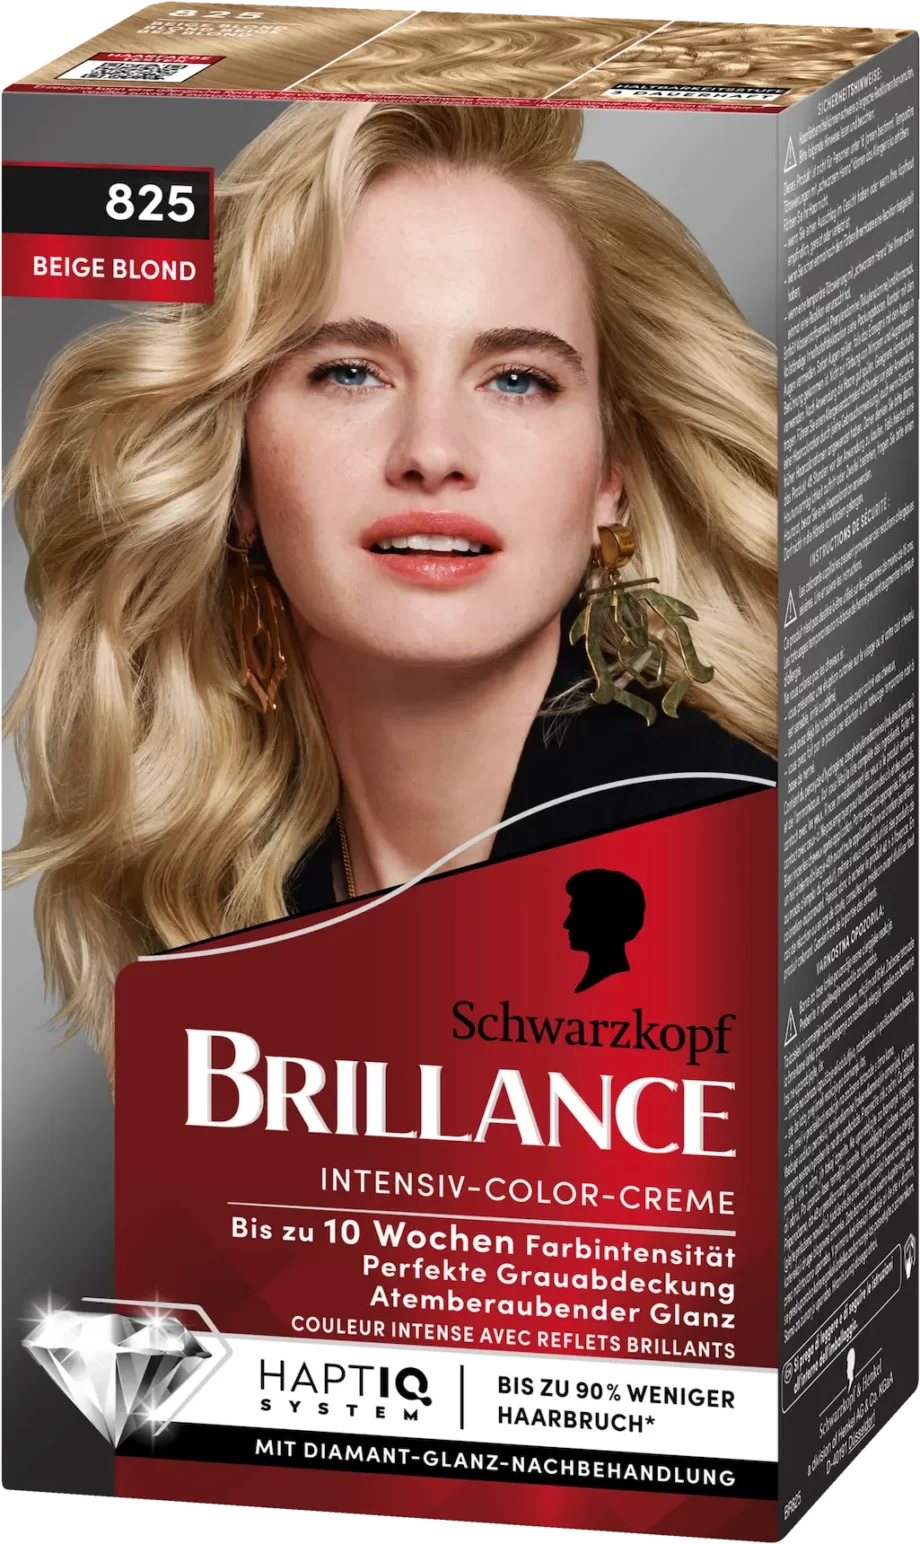 schwarzkopf brillance 825 beige blonde color cream